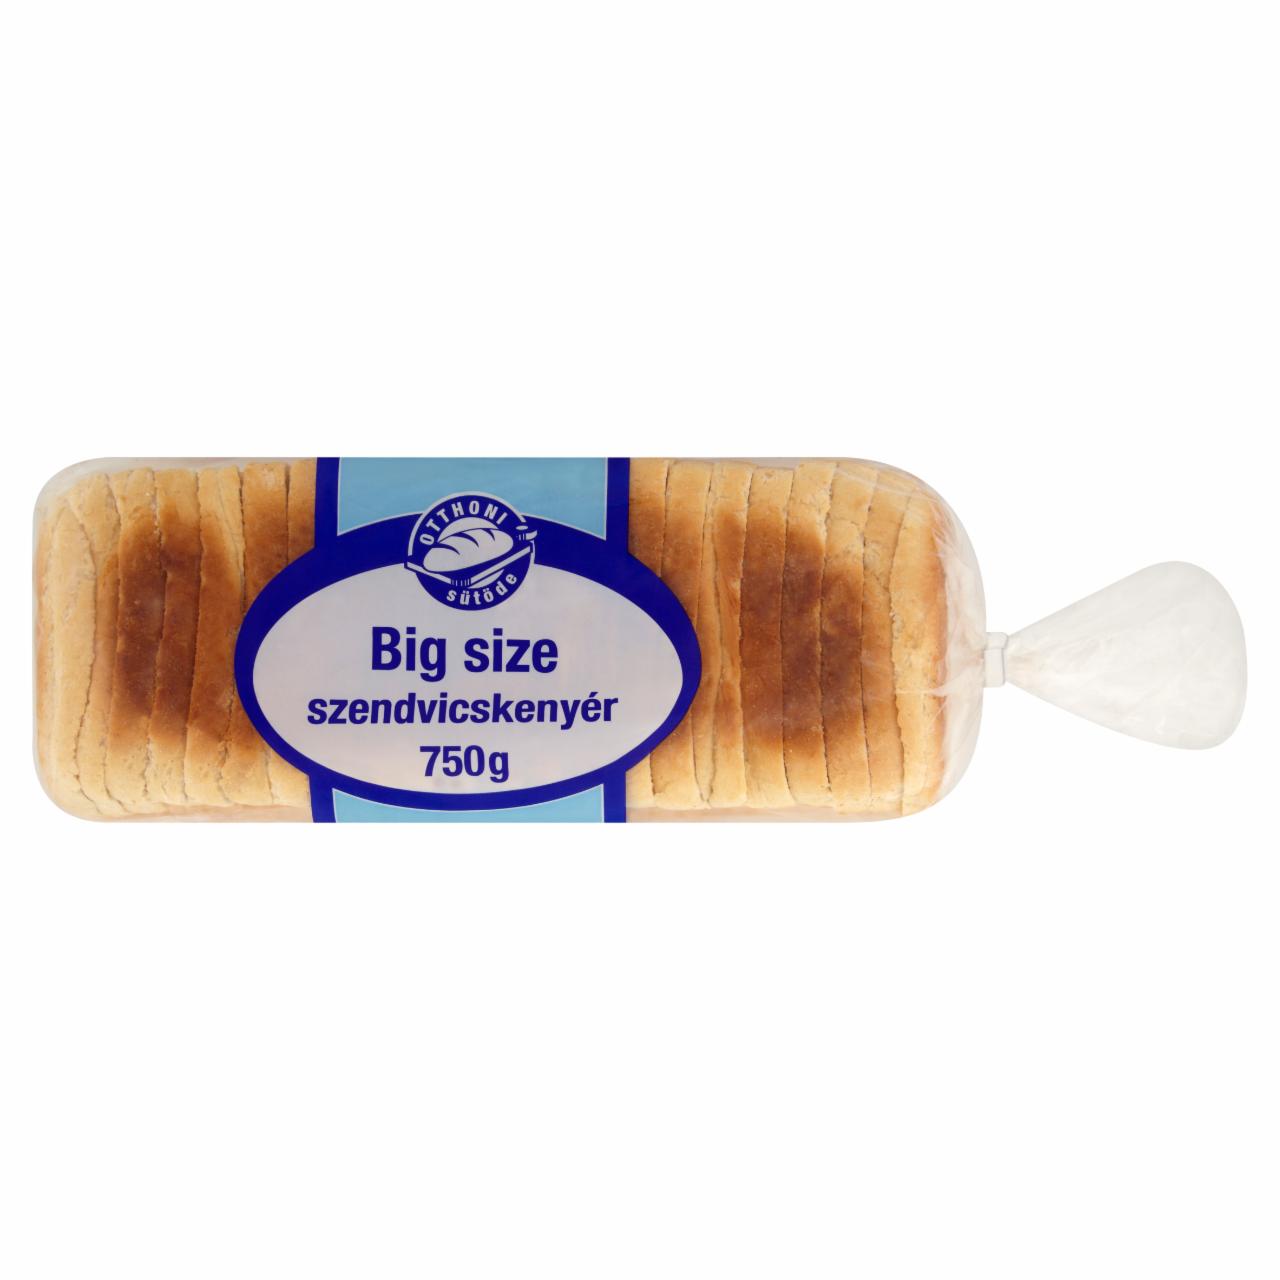 Képek - Otthoni Sütöde Big size szendvicskenyér 750 g